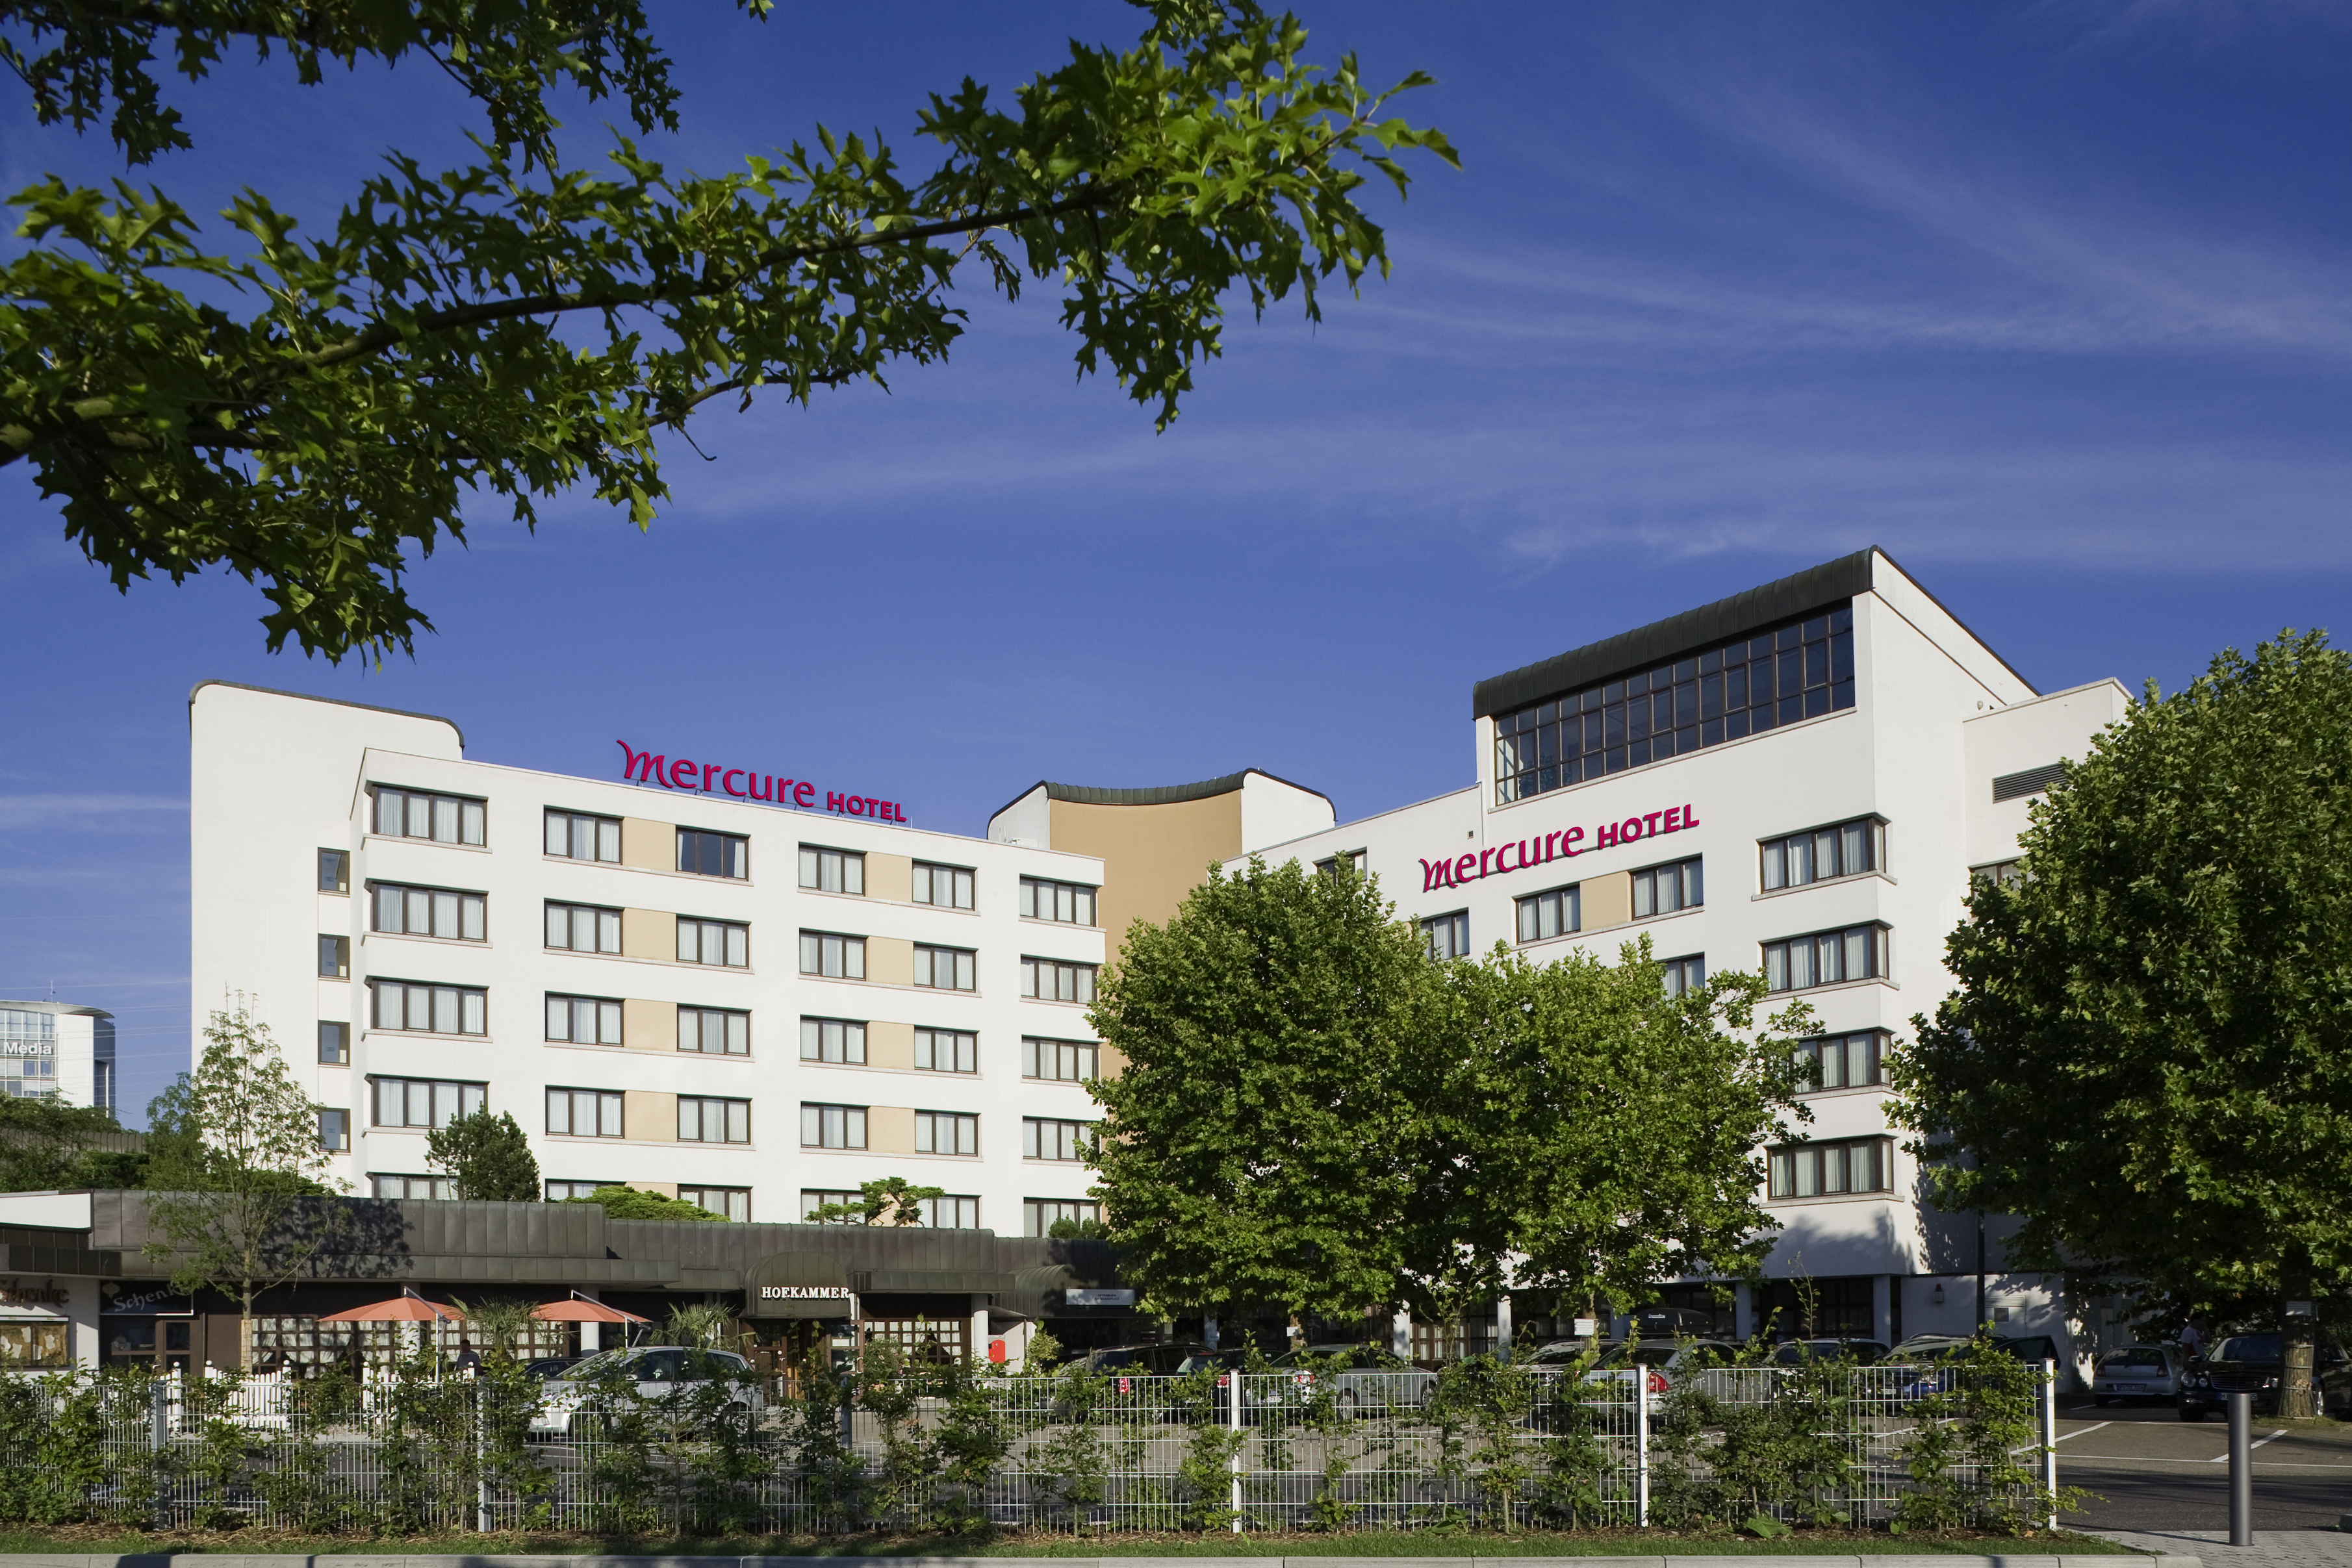 Mercure Hotel Offenburg am Messeplatz in Offenburg bei Gengenbach